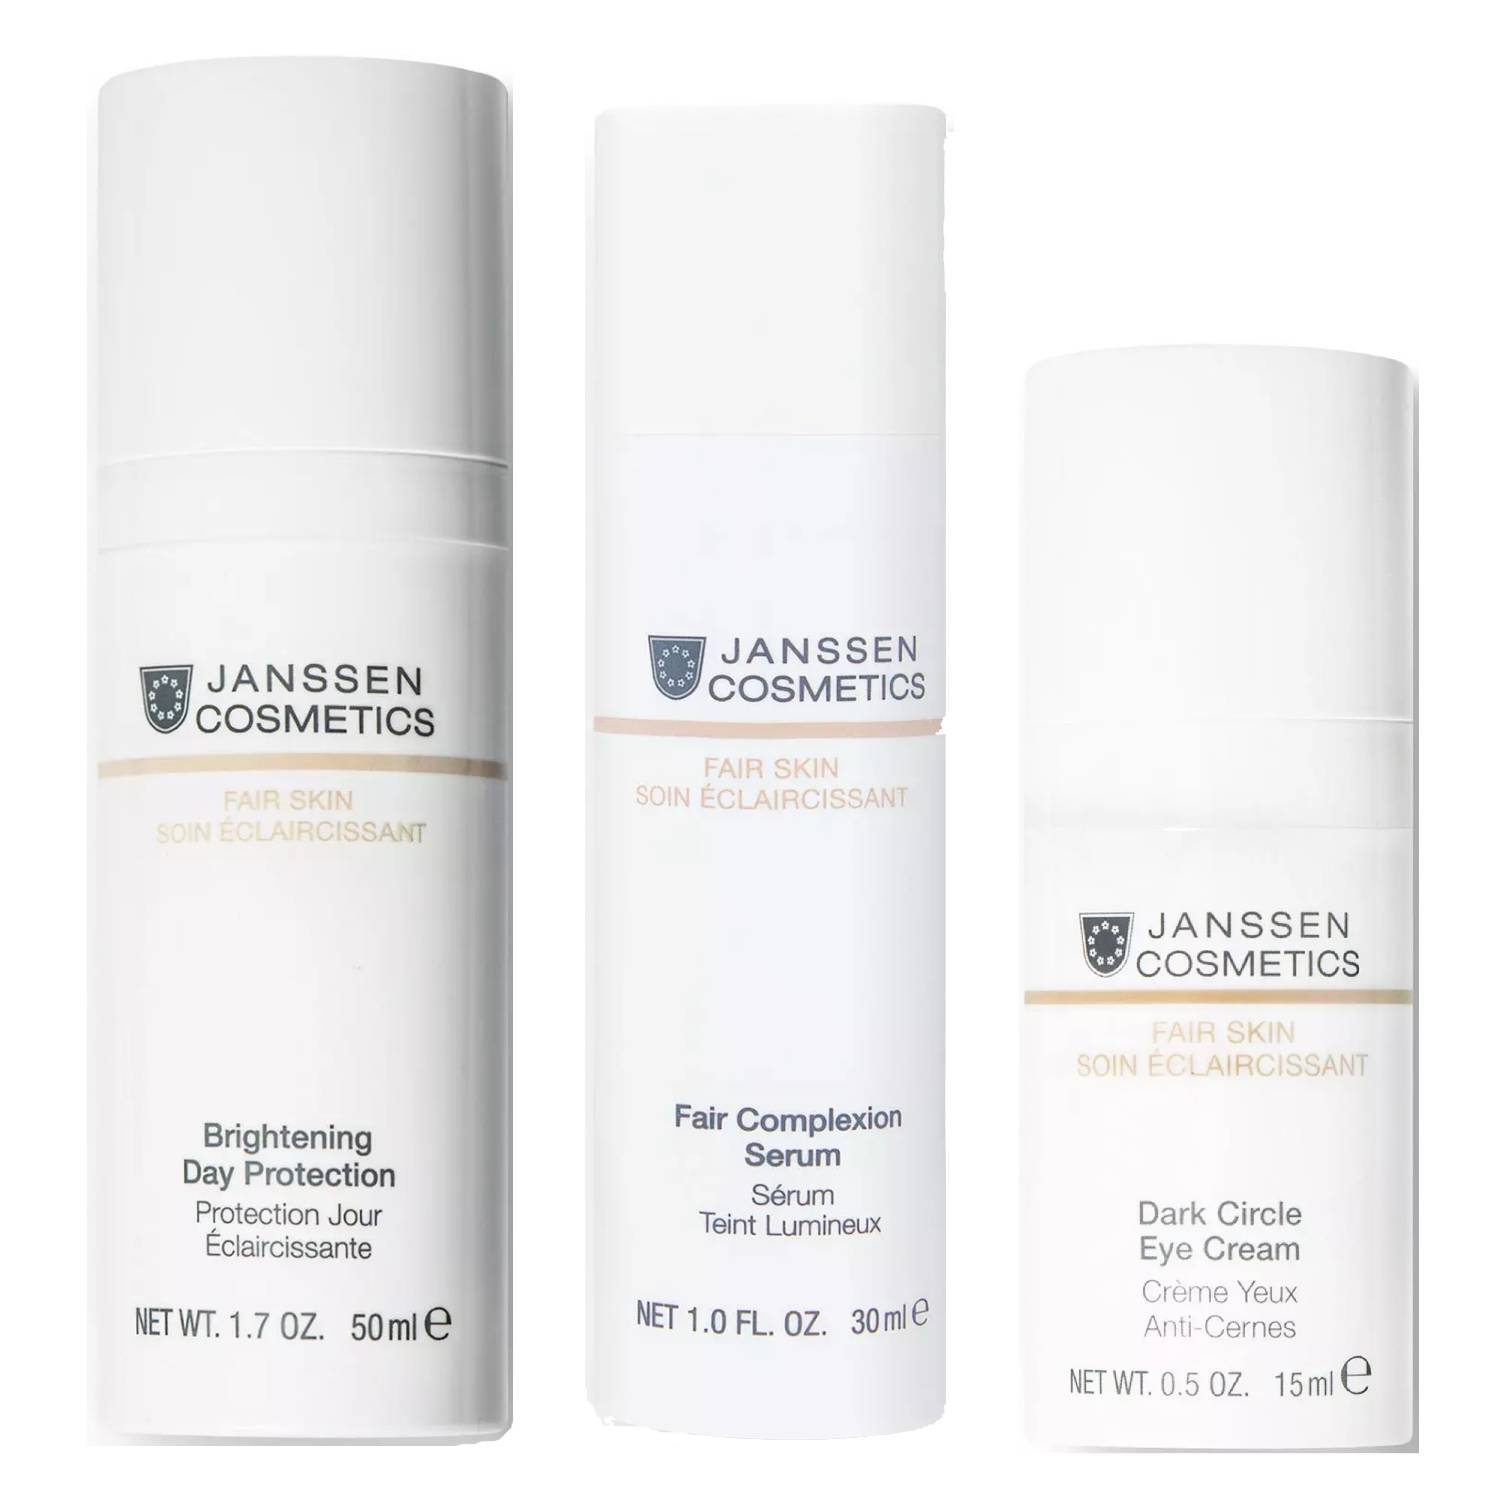 Janssen Cosmetics Набор Осветляющий дневной уход, 3 продукта (Janssen Cosmetics, Fair Skin) janssen cosmetics набор осветляющий дневной уход 3 продукта janssen cosmetics fair skin